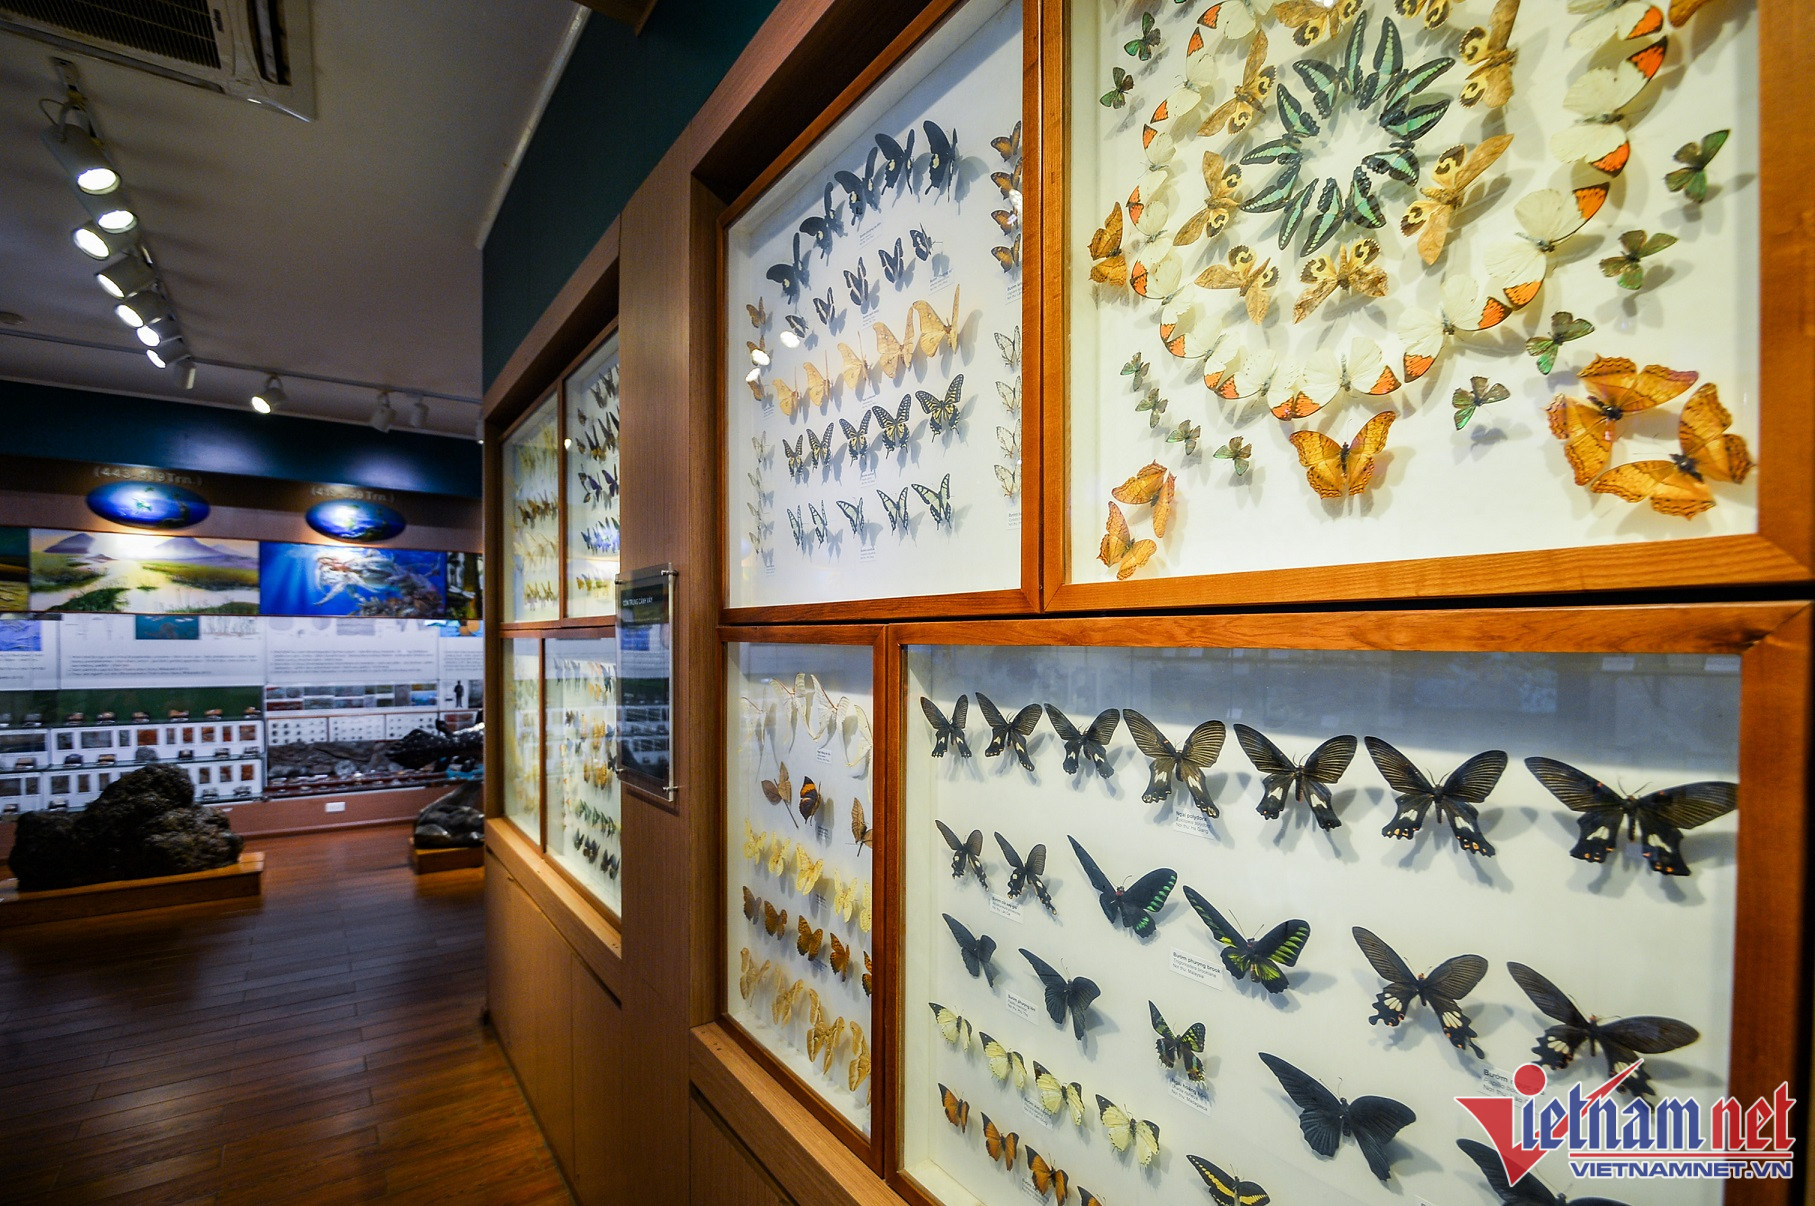 Khu vực trưng bày về hệ côn trùng gồm nhiều bộ như: cánh phấn, cánh cứng, chuồn chuồn, ve sầu... Hầu hết mẫu vật tại bảo tàng đều được bảo quản tốt, cơ sở vật chất còn rất mới dù đã thành lập nhiều năm. 